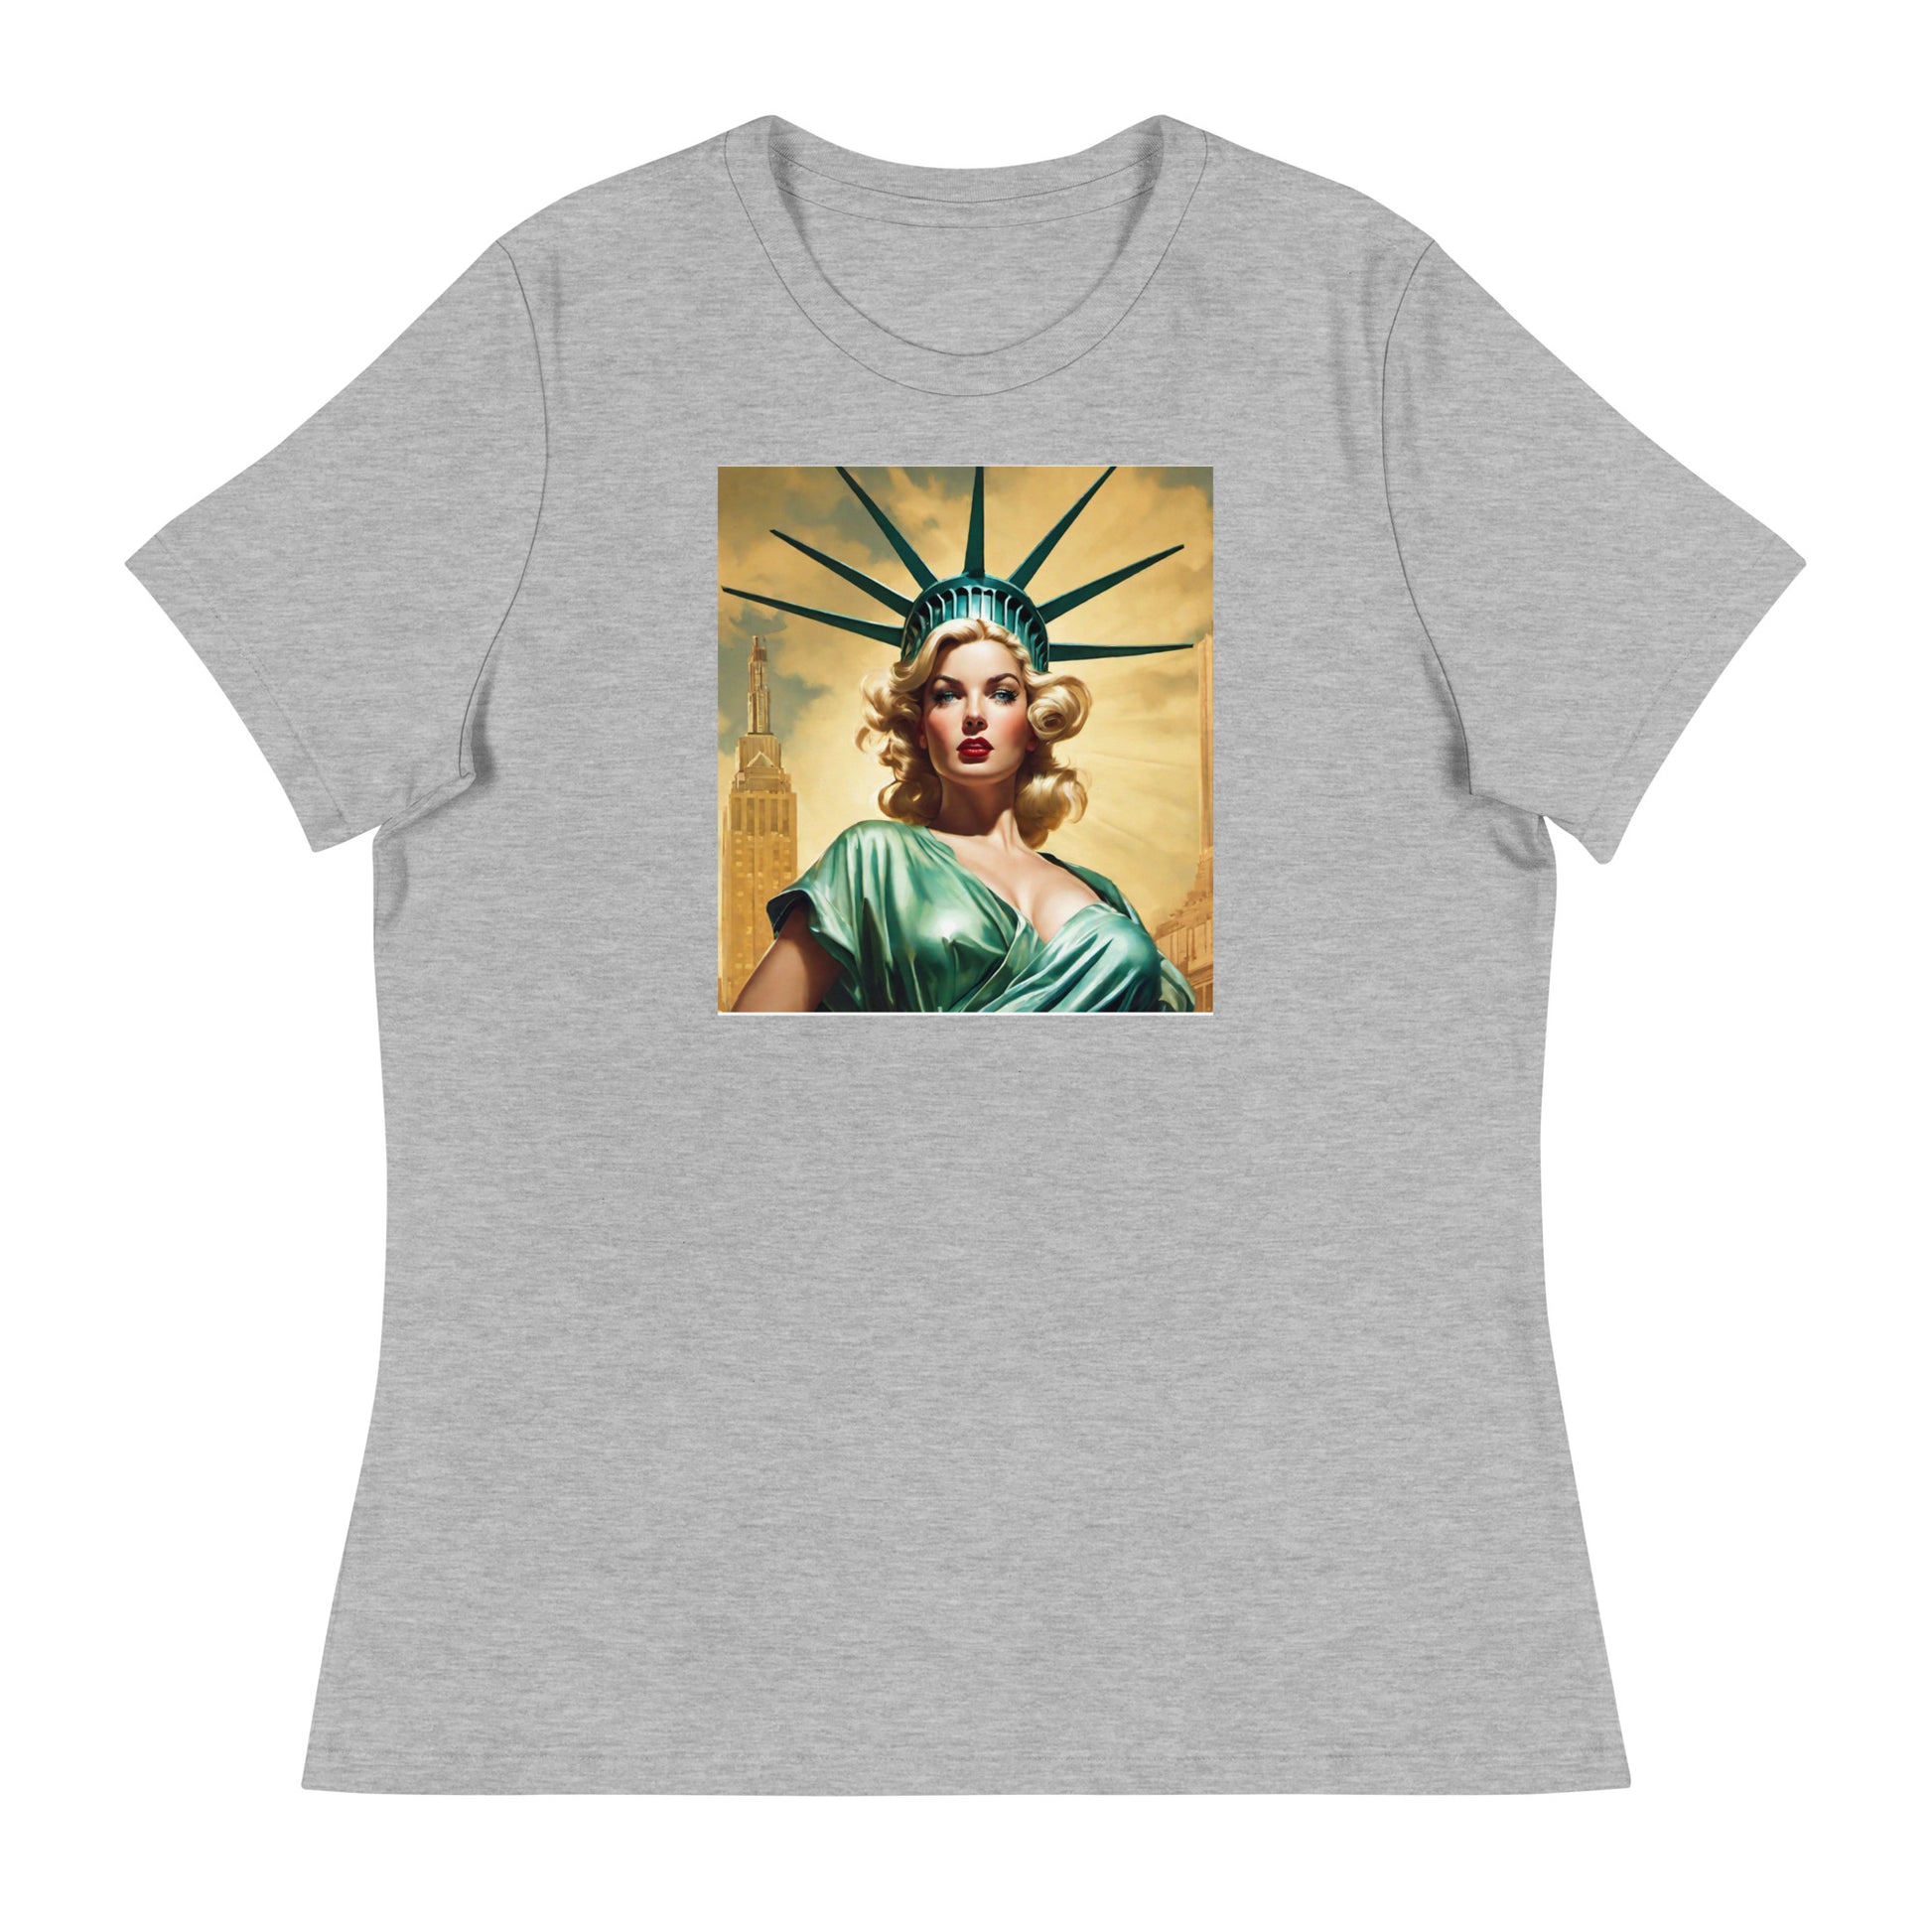 Beautiful Lady Liberty Women's T-Shirt Athletic Heather